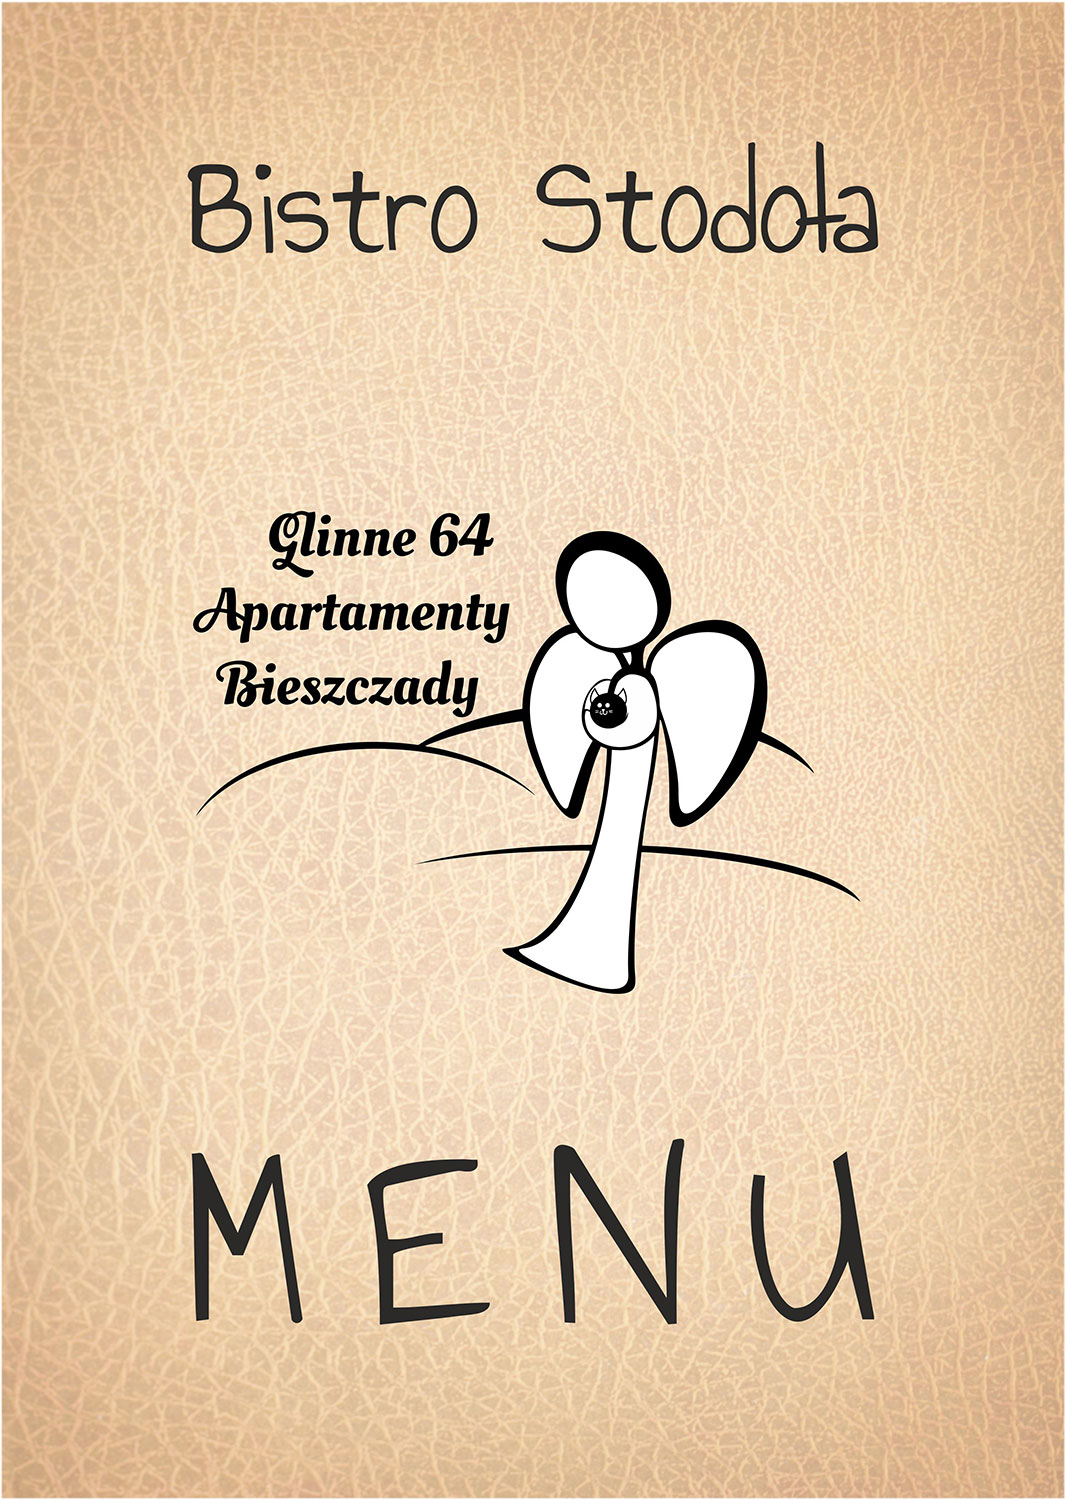 Bistro Stodoła - Menu - Apartamenty Bieszczady Glinne 64